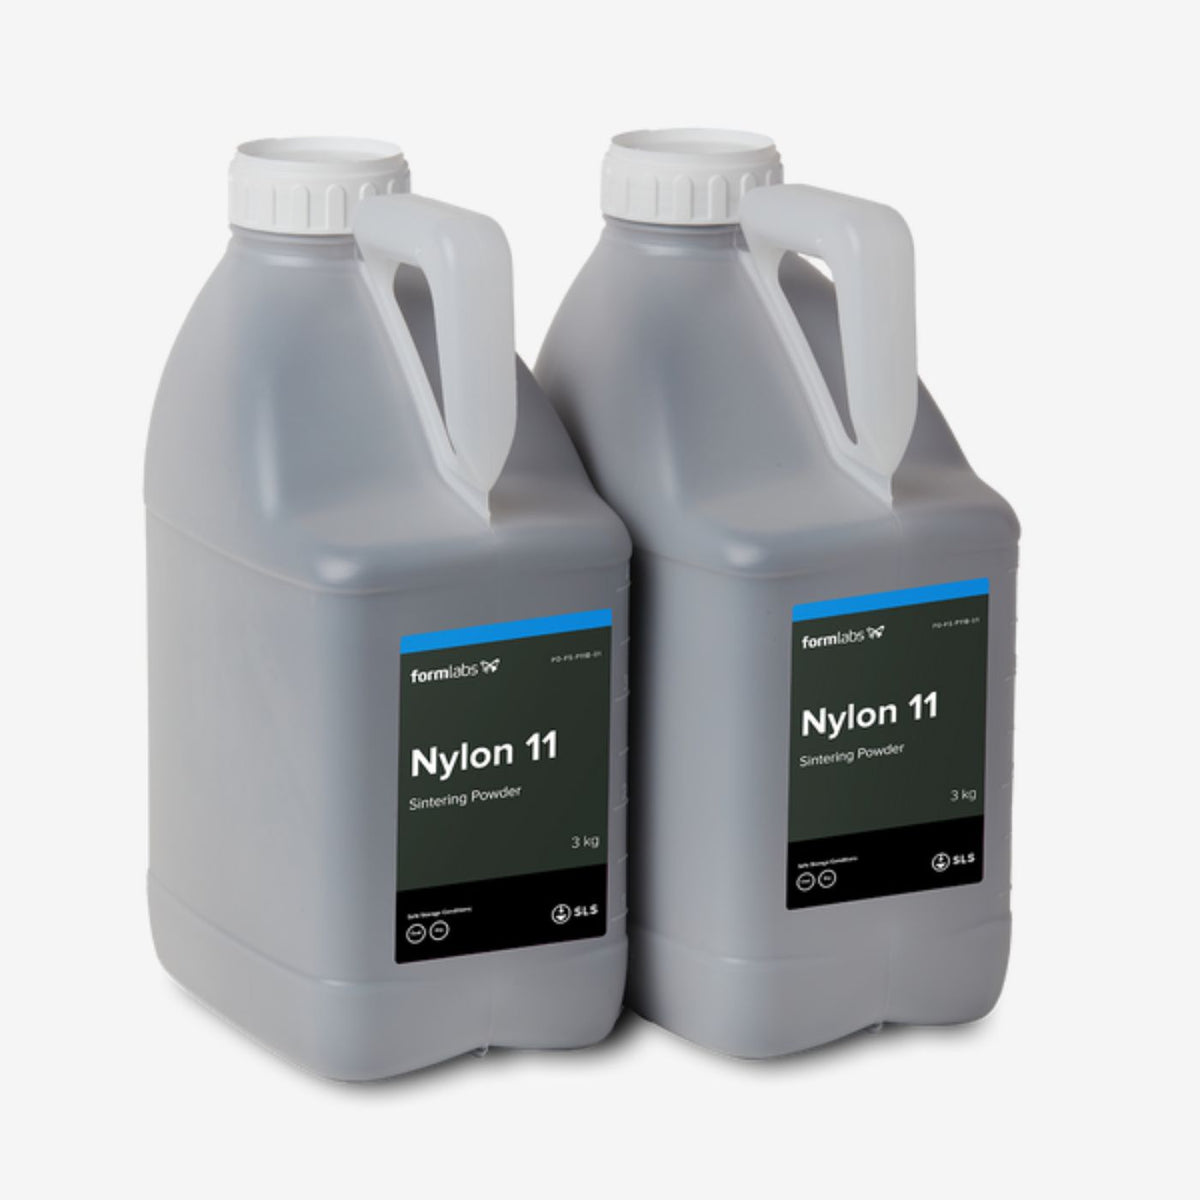 Nylon 11 Powder